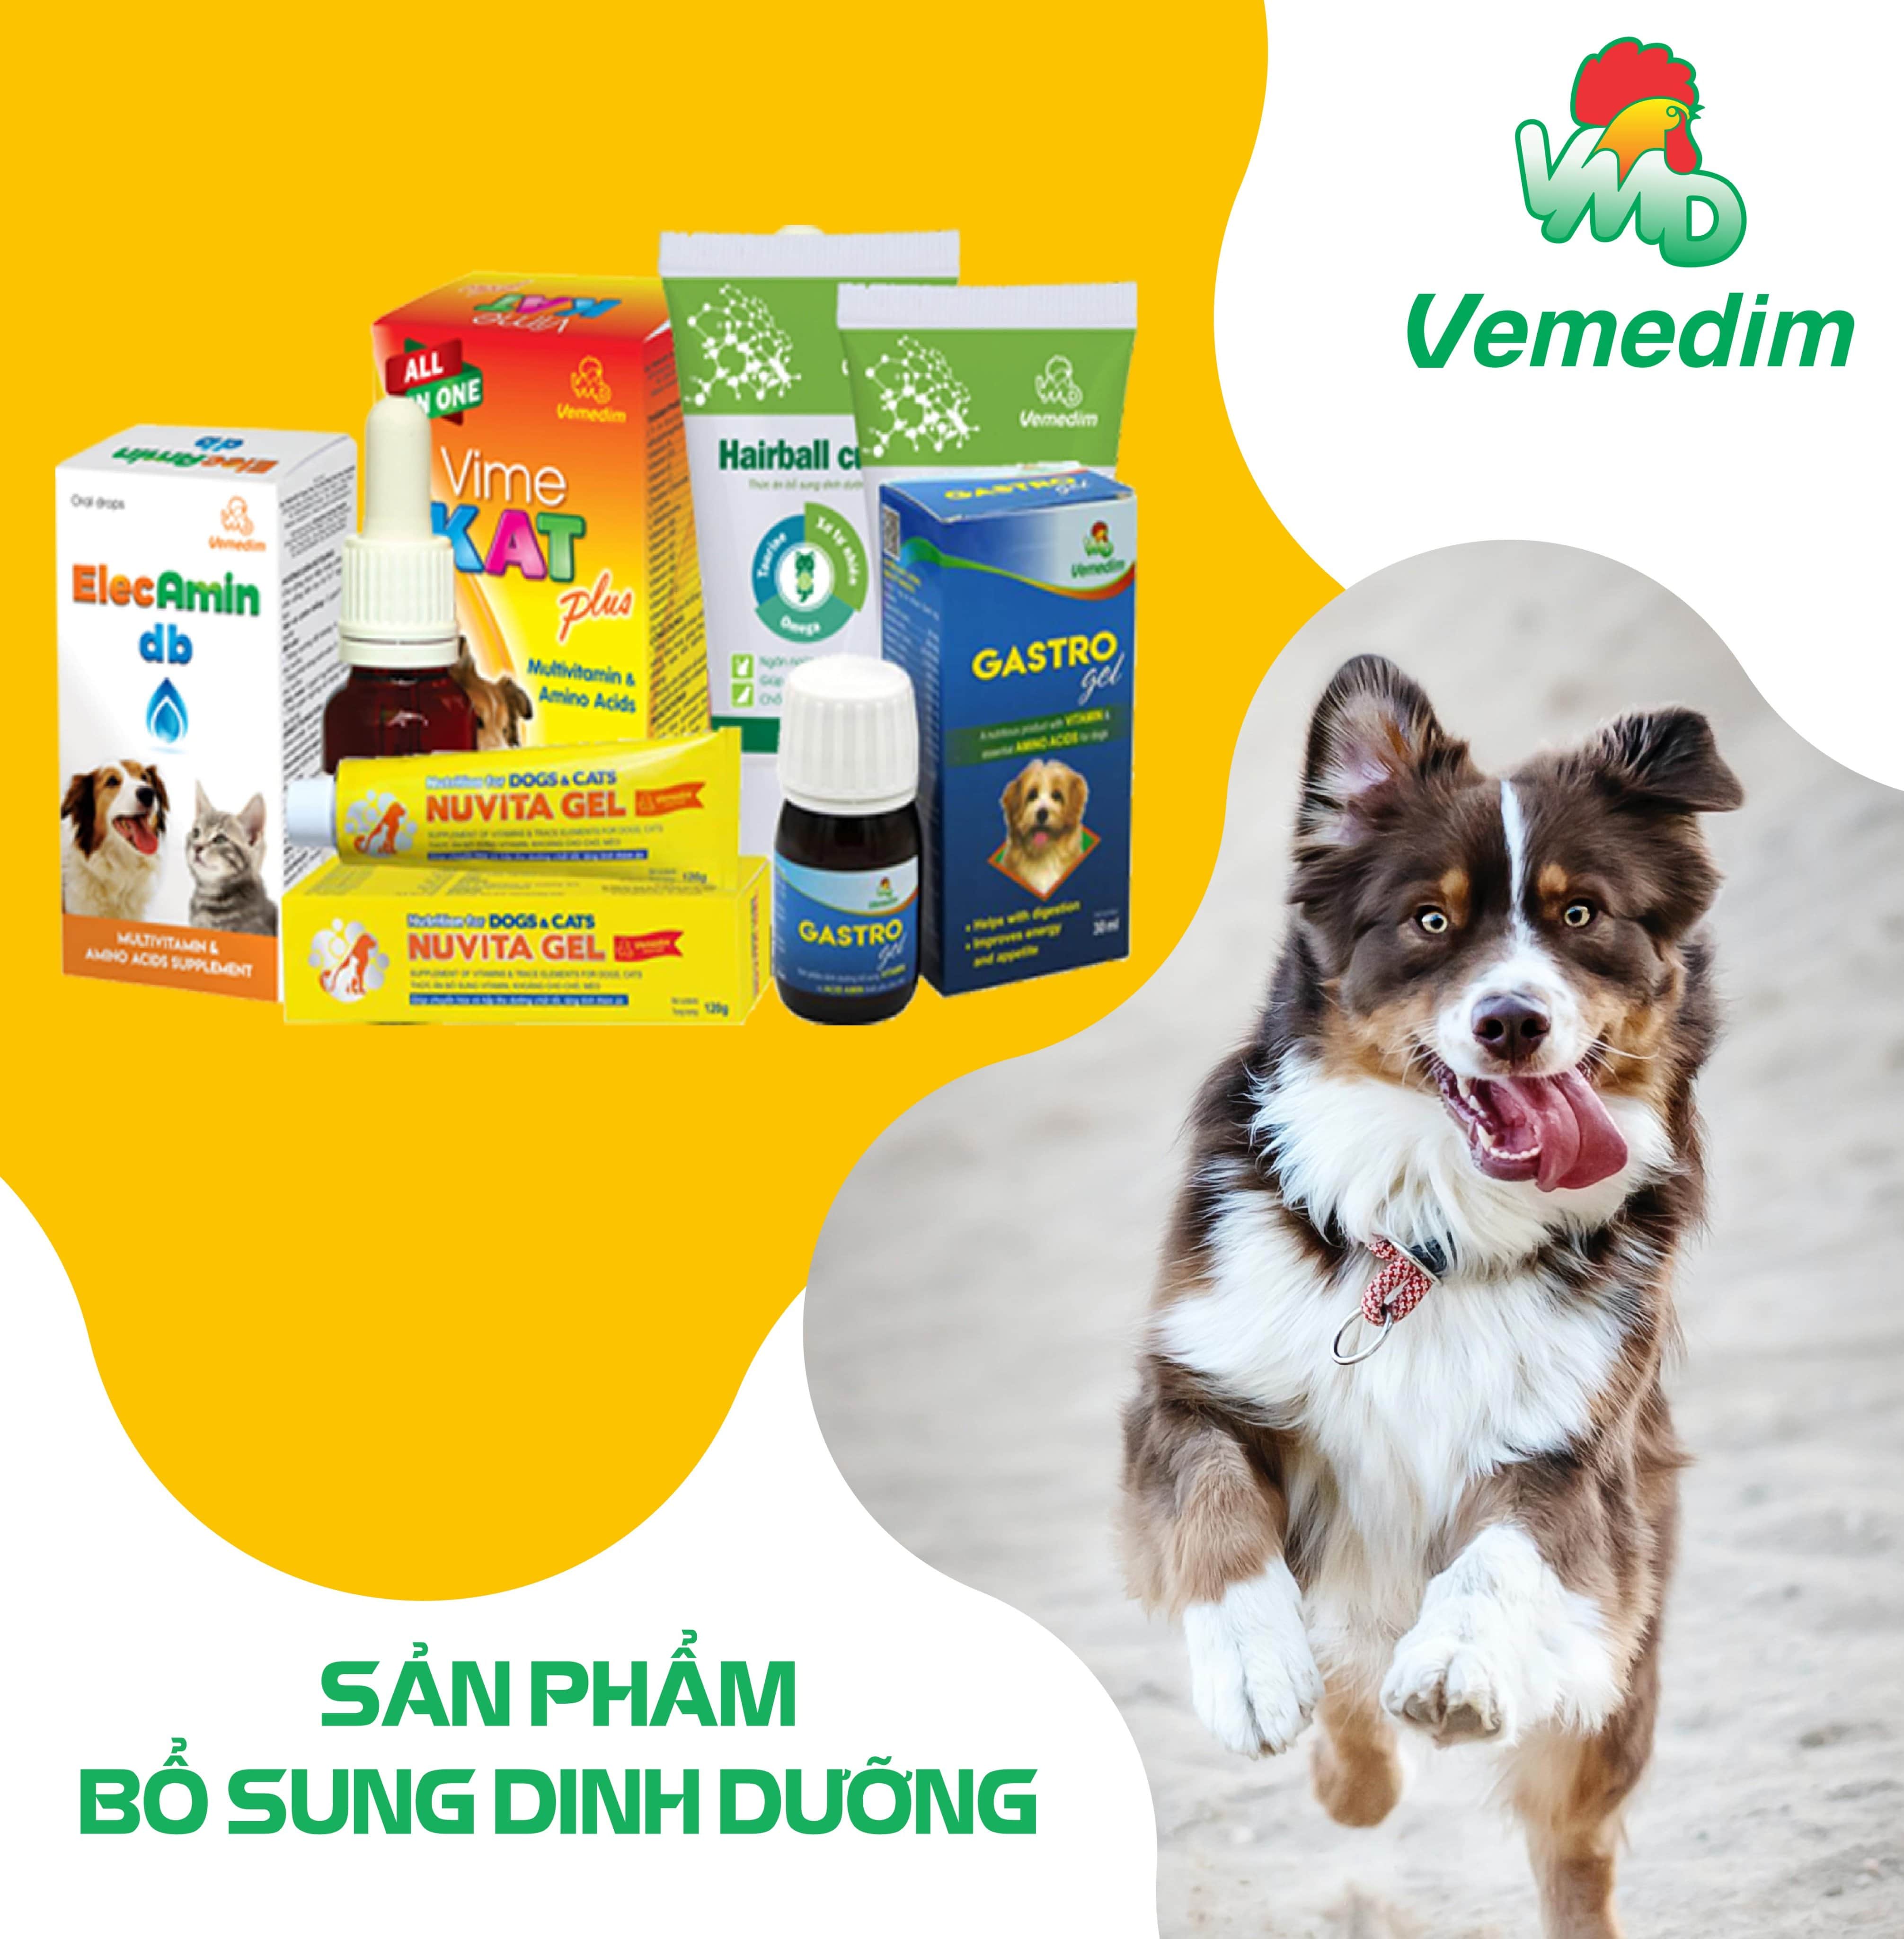 Thuốc phòng trị ve, rận, bọ chét cho chó từ 2kg-10kg Vemedim Fronil Extra xanh (Hộp)